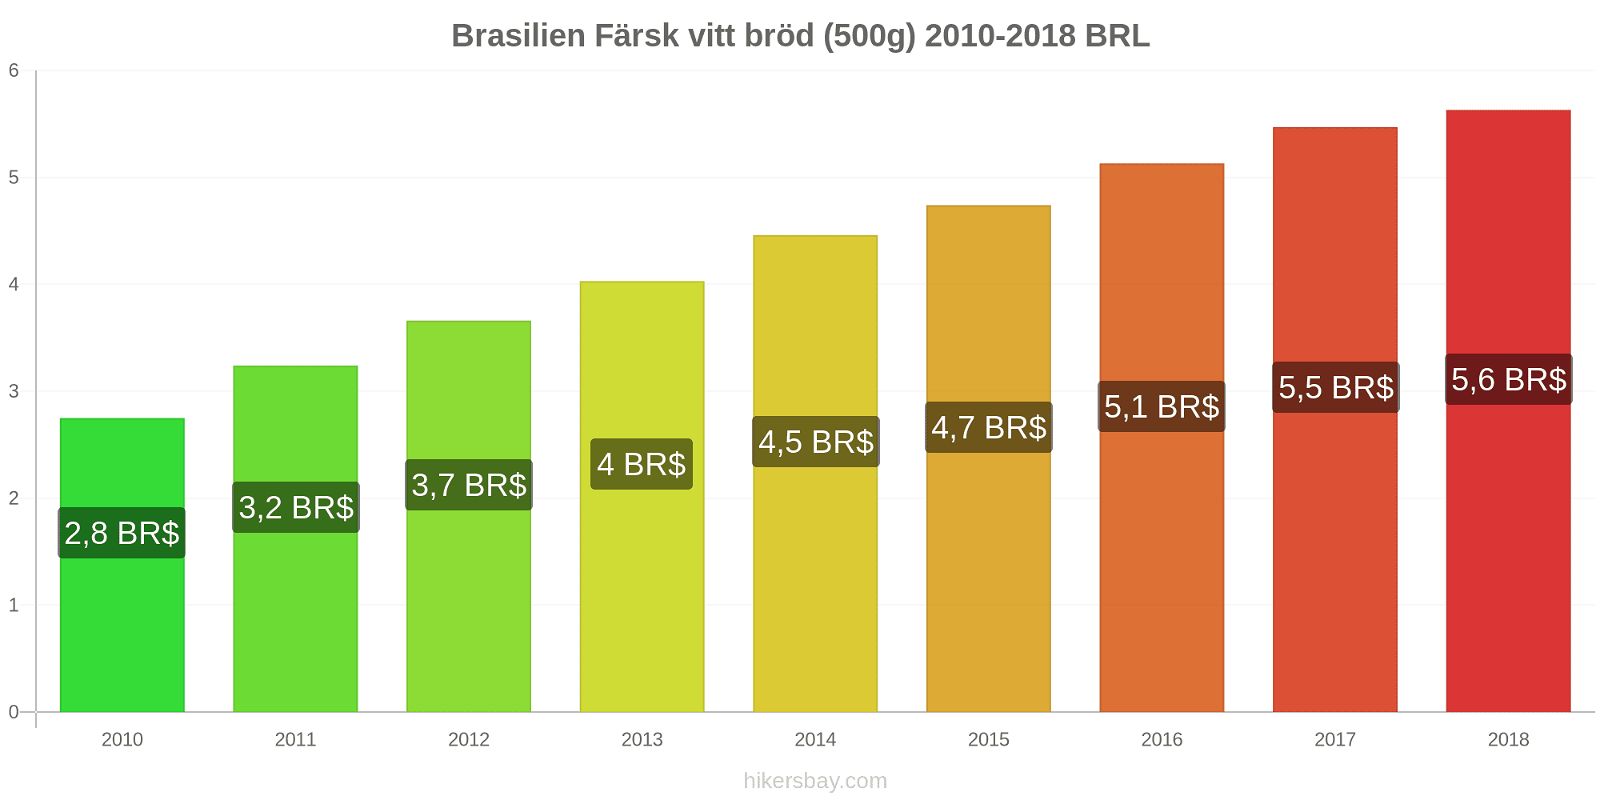 Brasilien prisändringar Färsk vitt bröd (500g) hikersbay.com